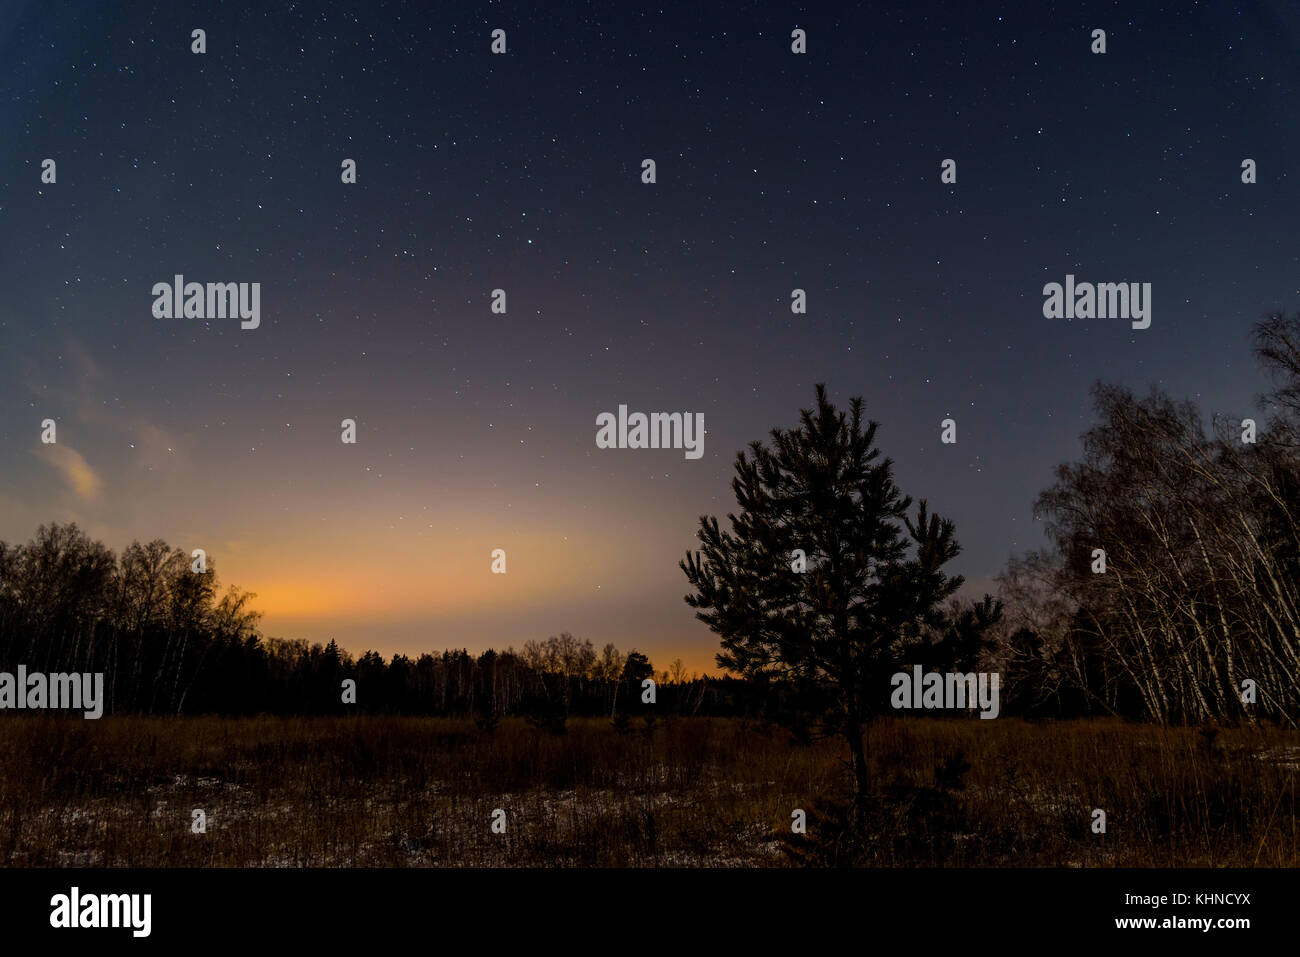 Nacht Landschaft mit den Sternen am Nachthimmel auf dem Hintergrund eines dunklen Wald Stockfoto